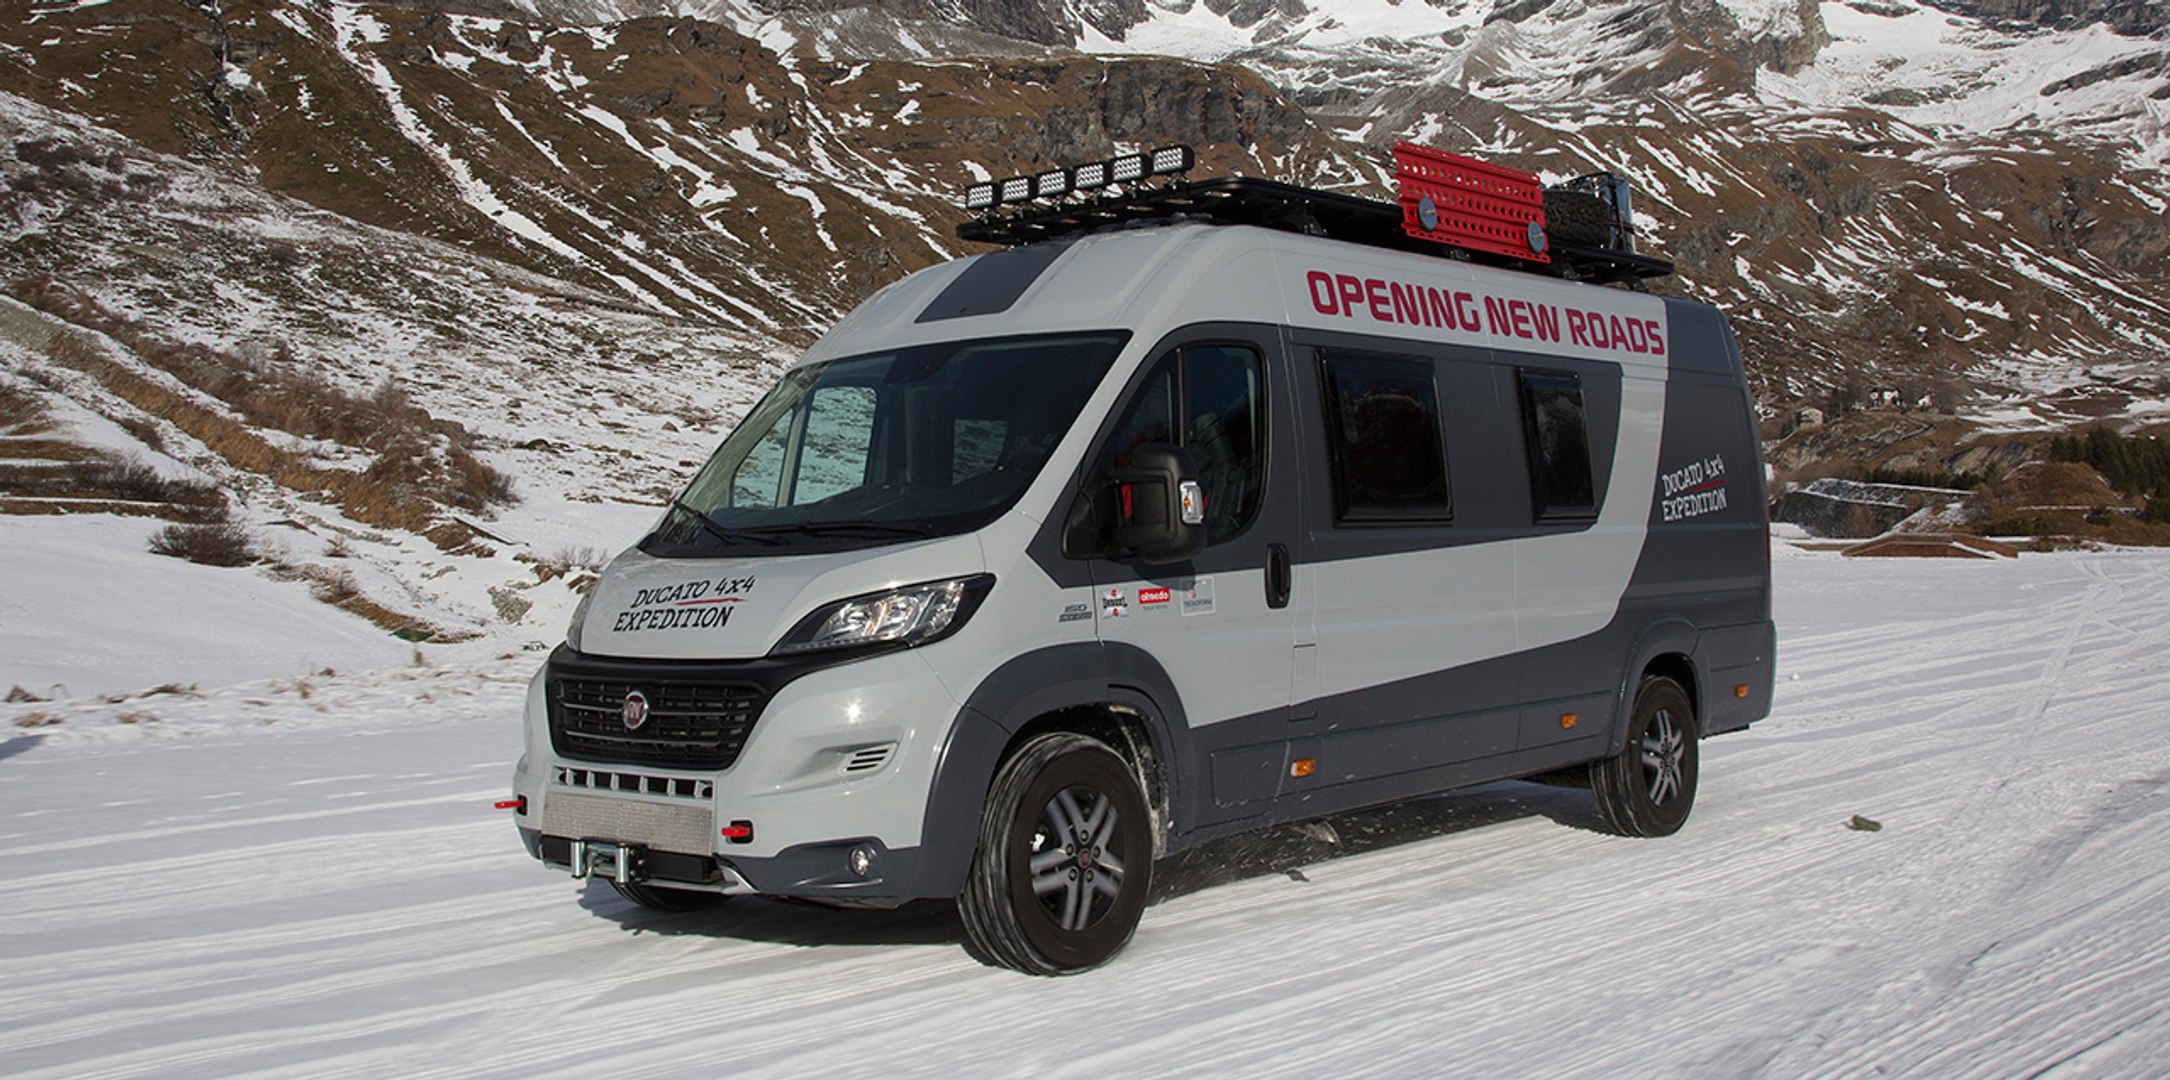 La aventura en la nieve de la Fiat Ducato 4x4 Expedition - Vídeo Dailymotion